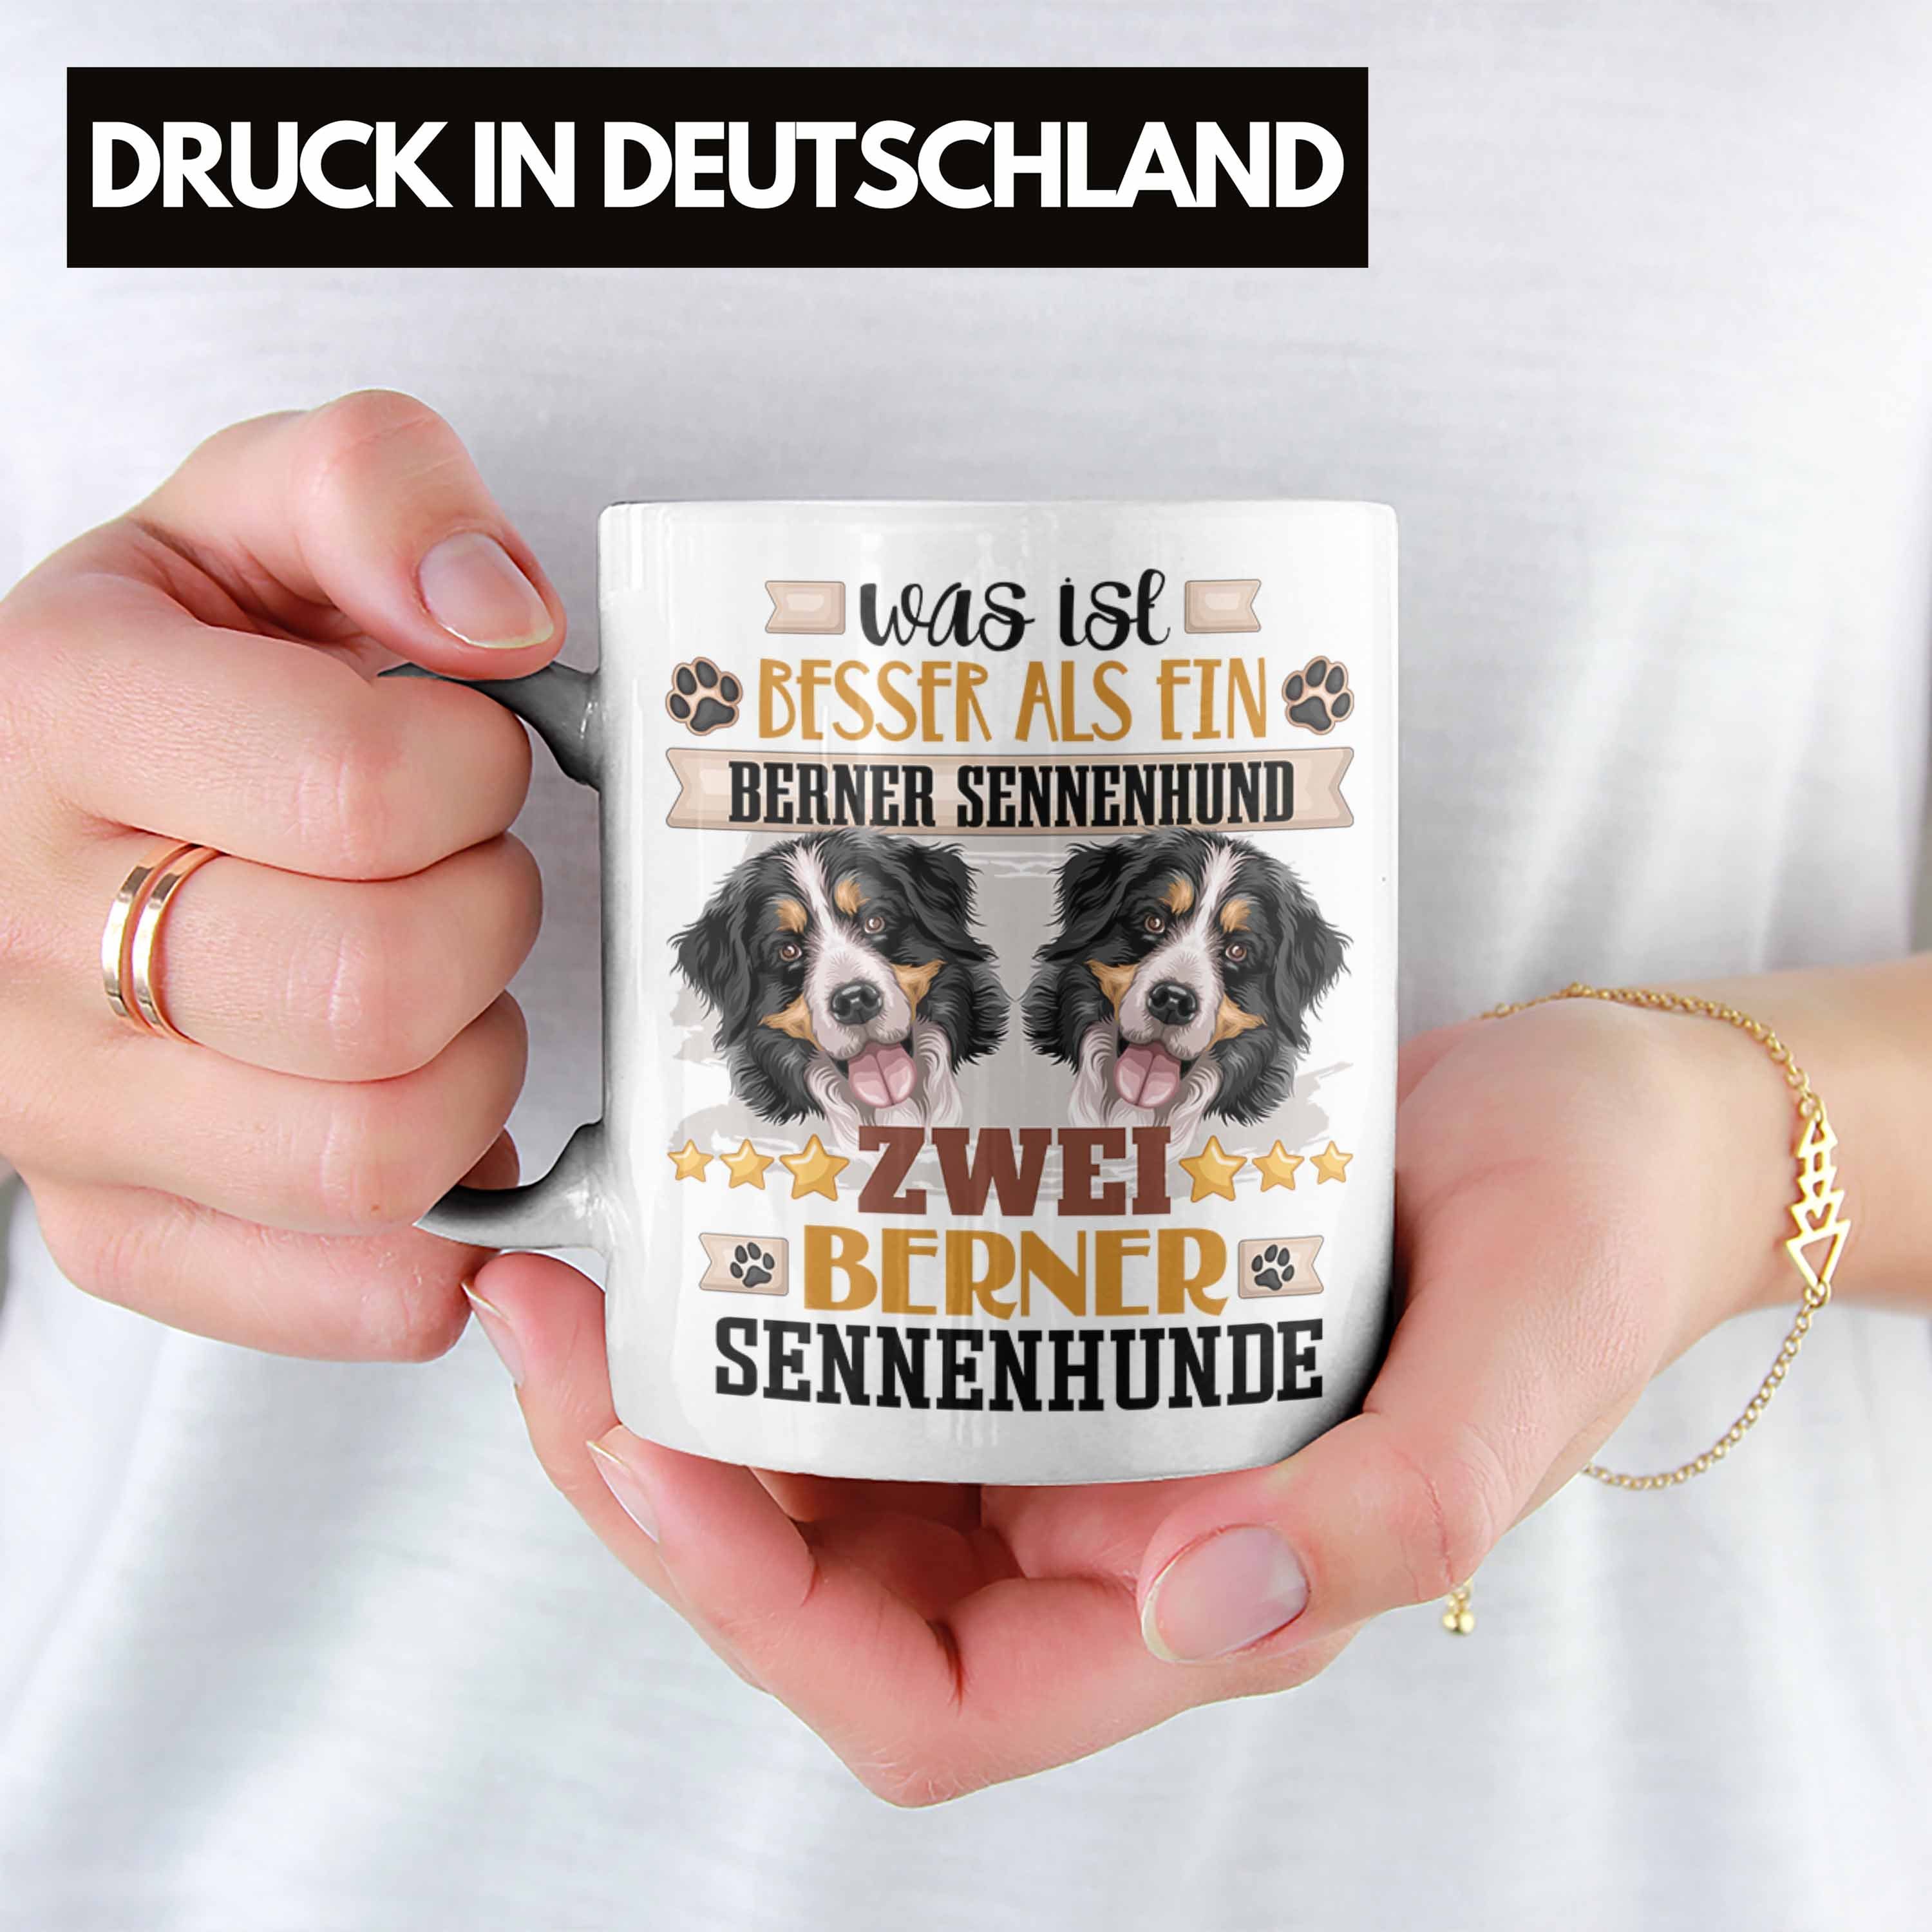 Trendation Tasse Berner Sennenhund Lustiger Geschenk Weiss Tasse Besitzer Spruch Geschenkidee